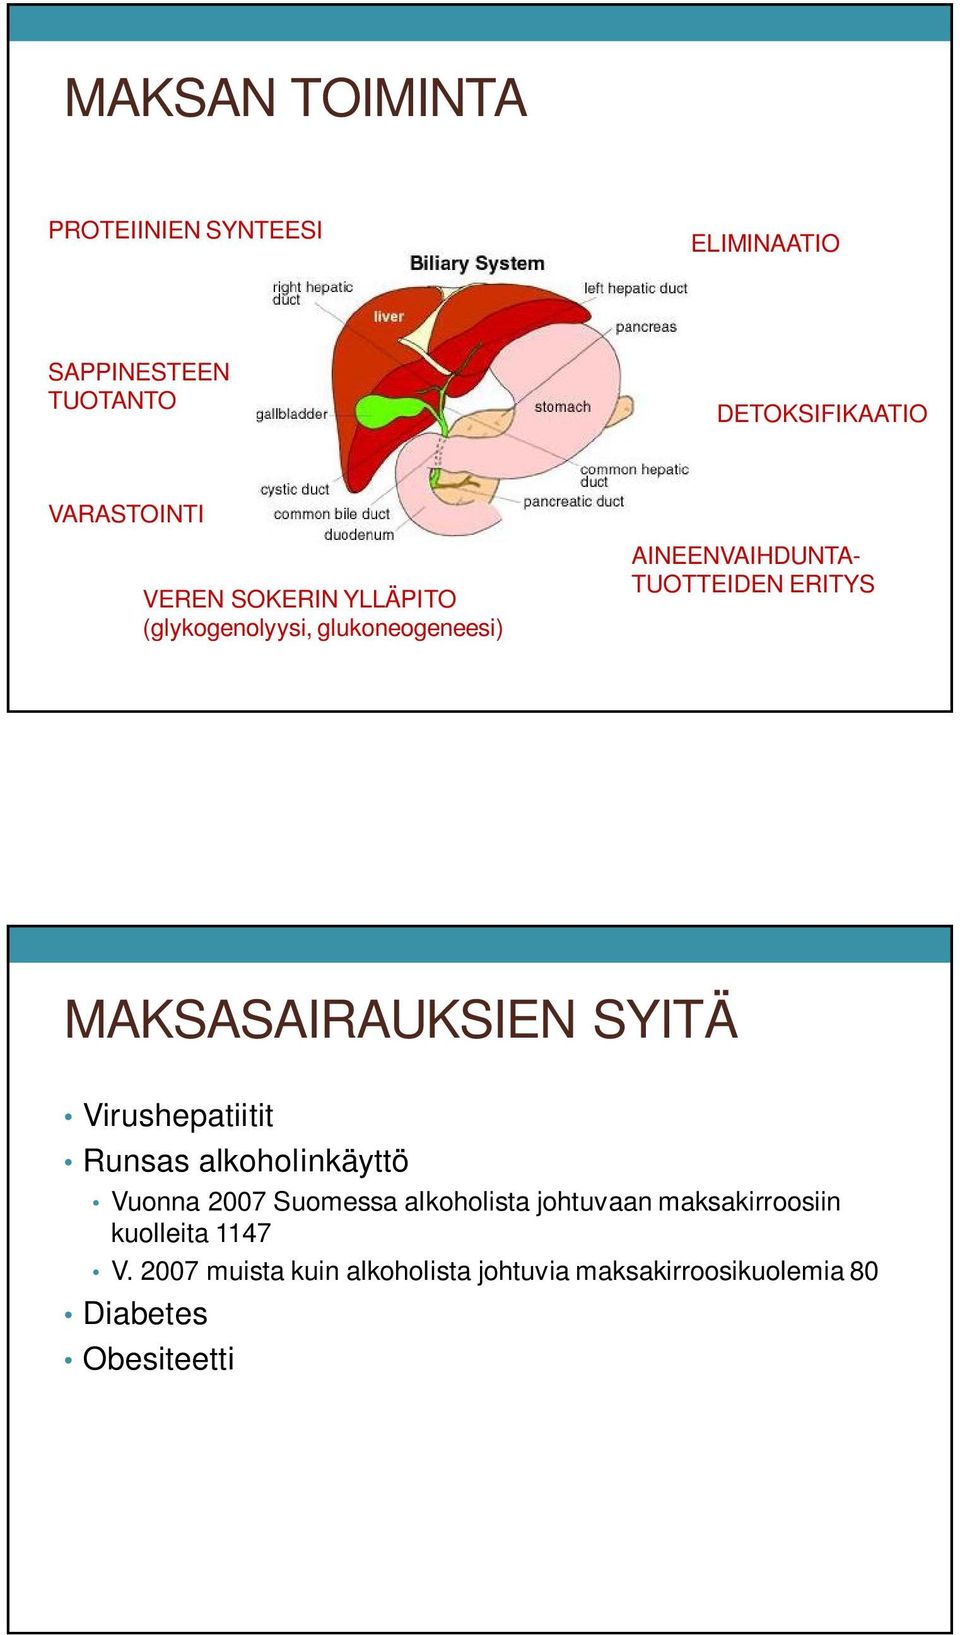 MAKSASAIRAUKSIEN SYITÄ Virushepatiitit Runsas alkoholinkäyttö Vuonna 2007 Suomessa alkoholista